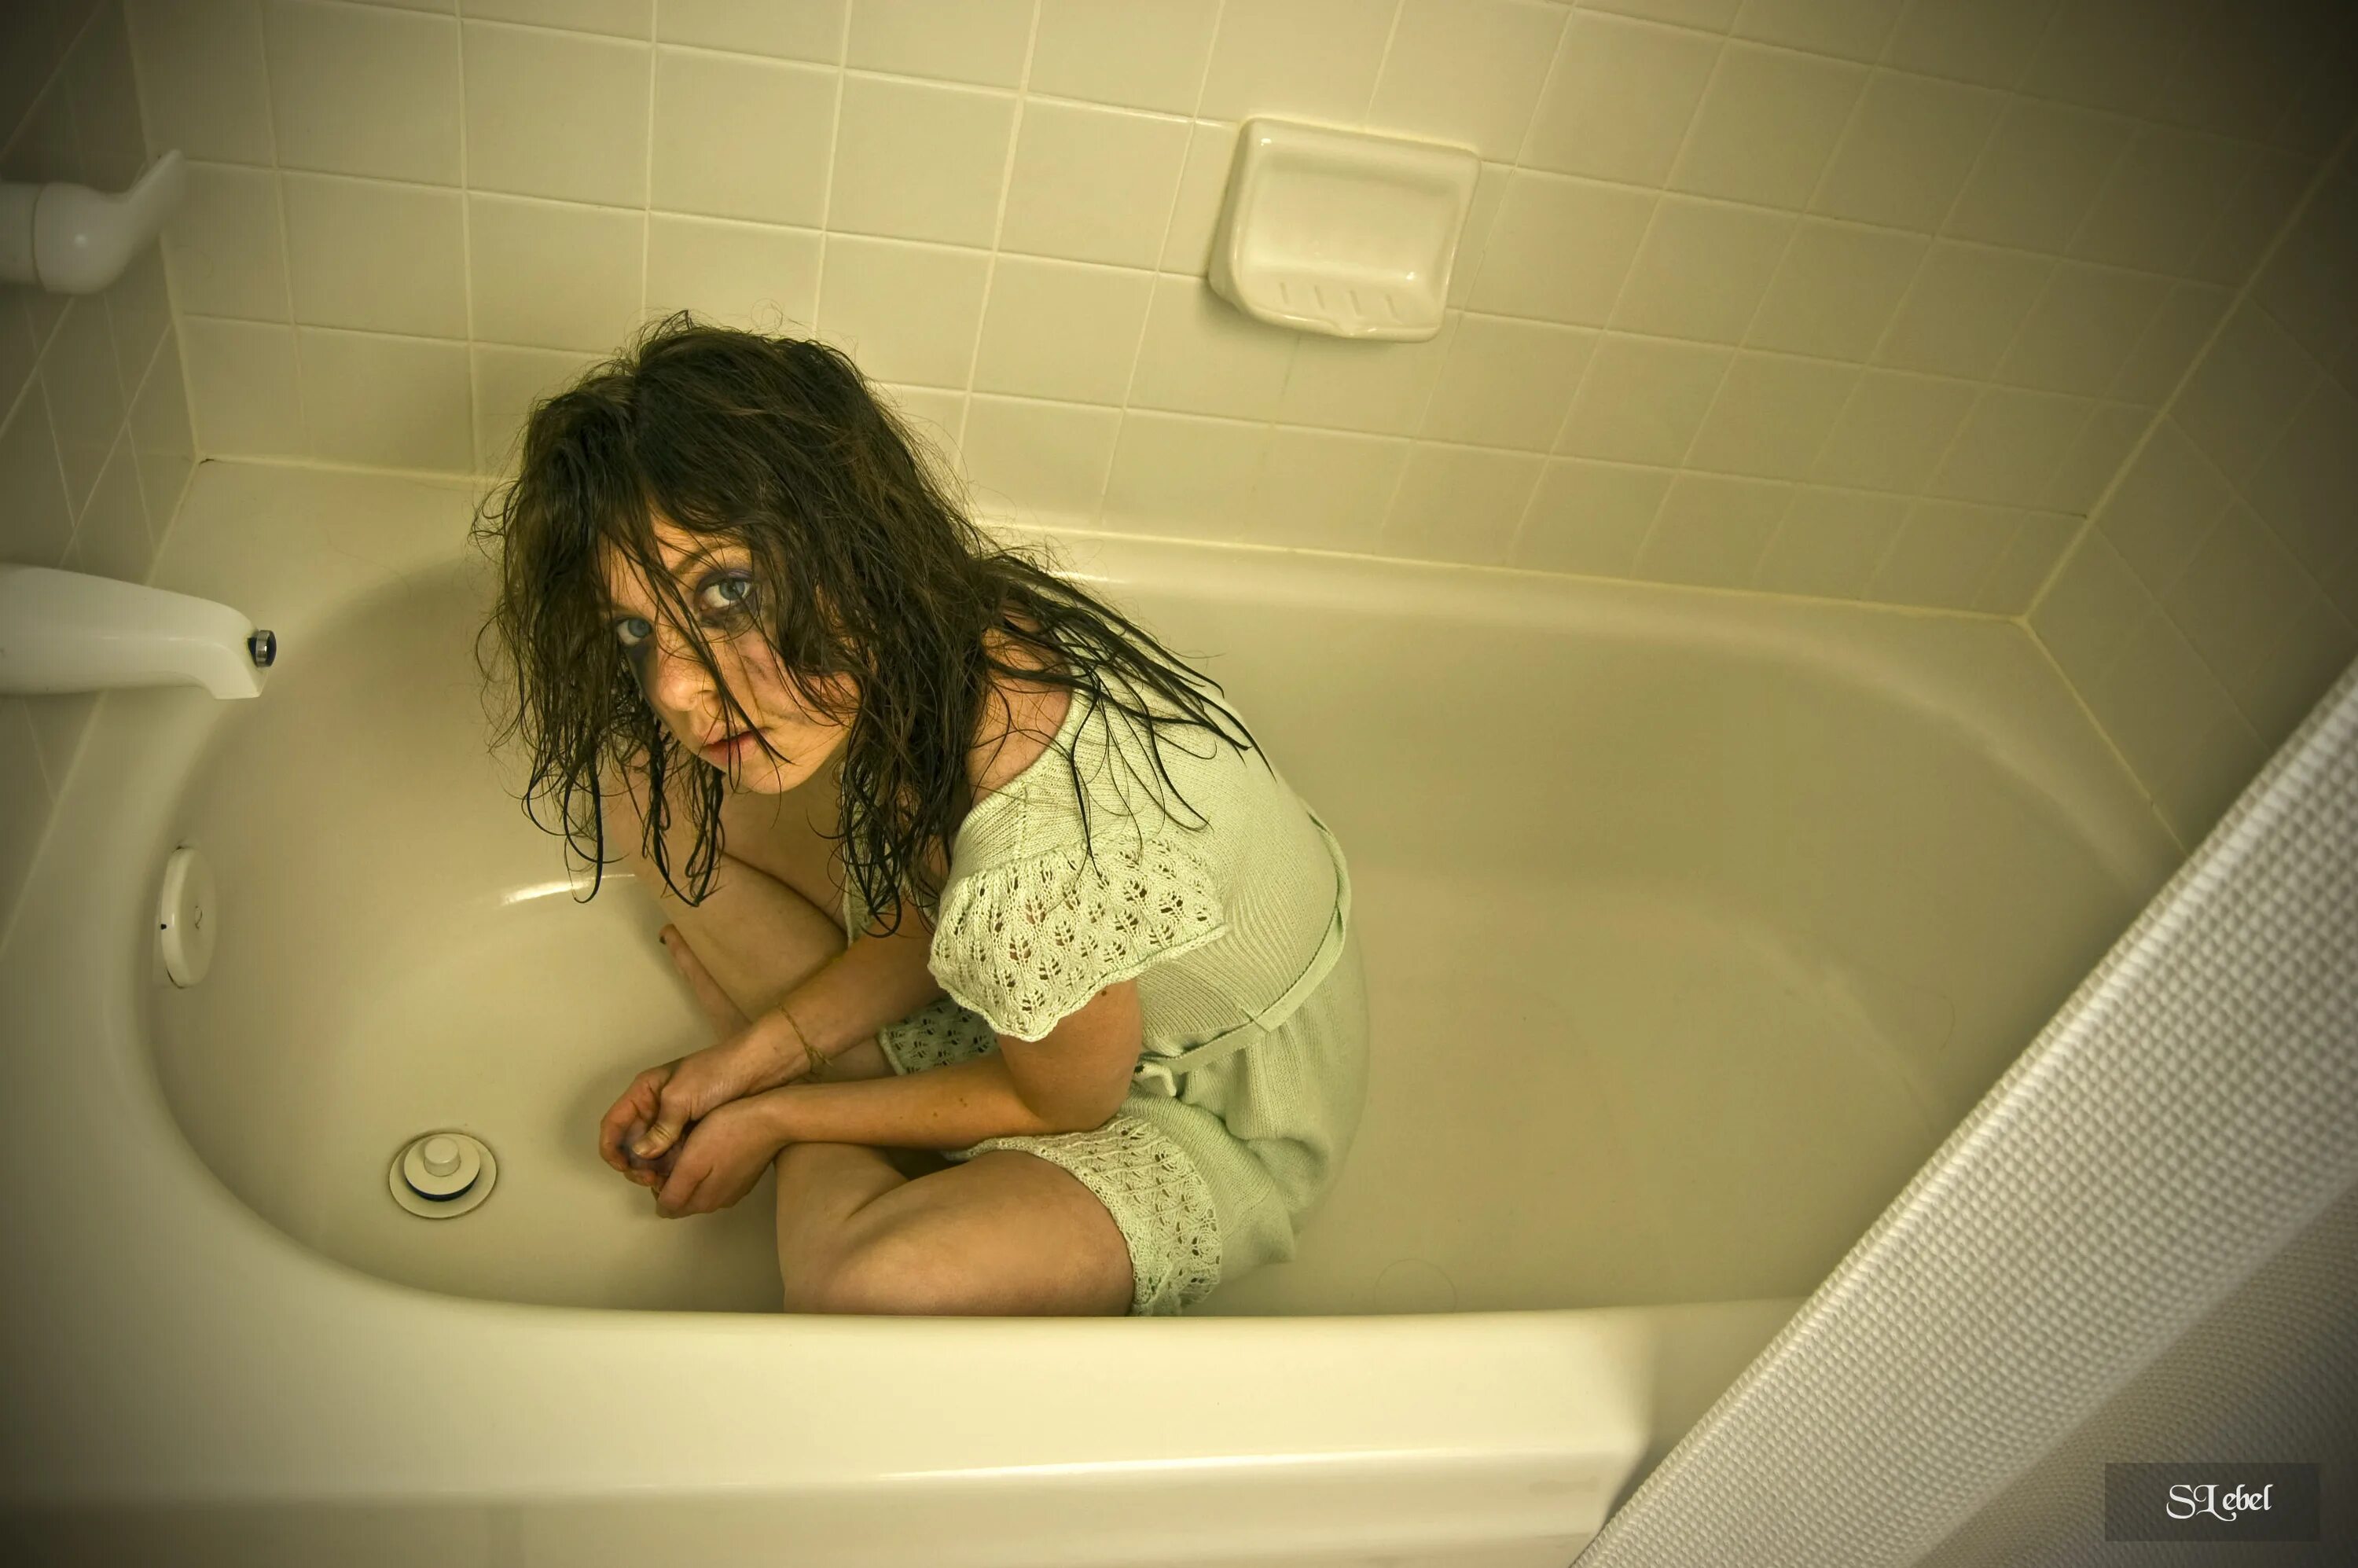 Скрыто мама в душе. Фотосессия в ванной комнате. Девушка в ванной комнате. Страшная фотосессия в ванной. Красивая девушка в ванной.